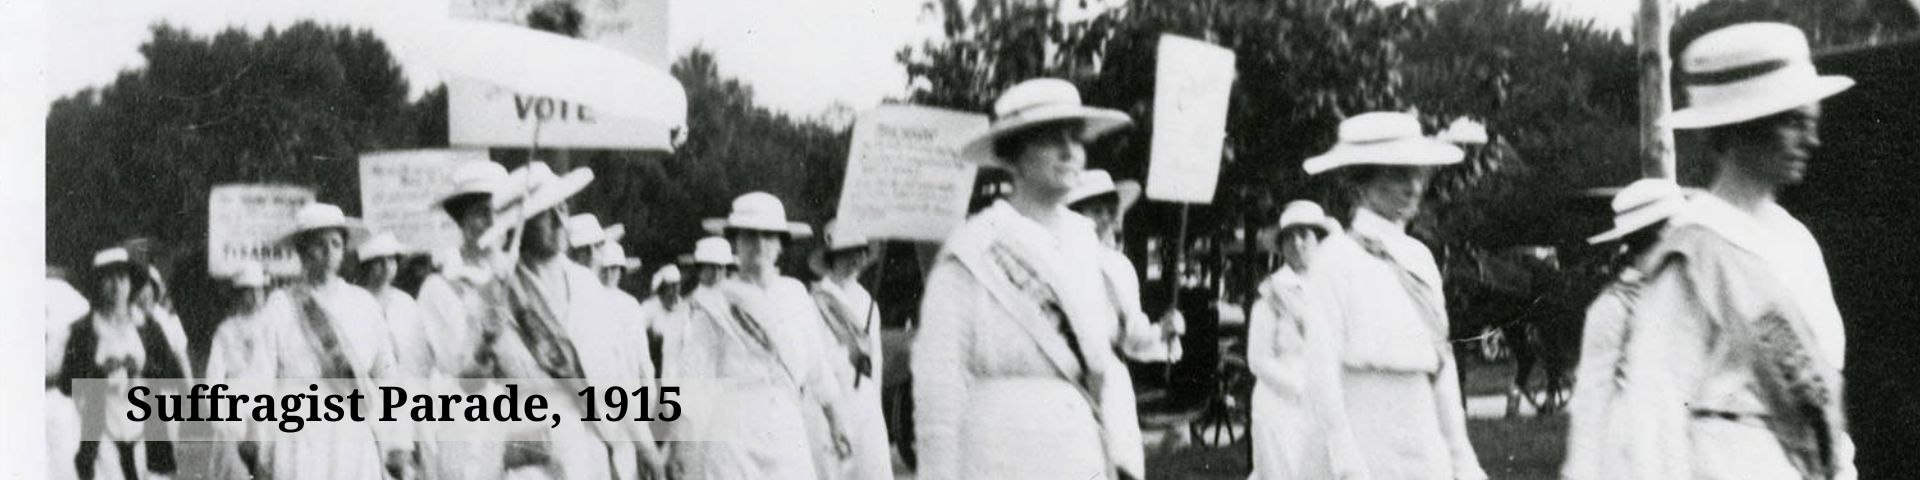 Suffragist Parade in Nashville